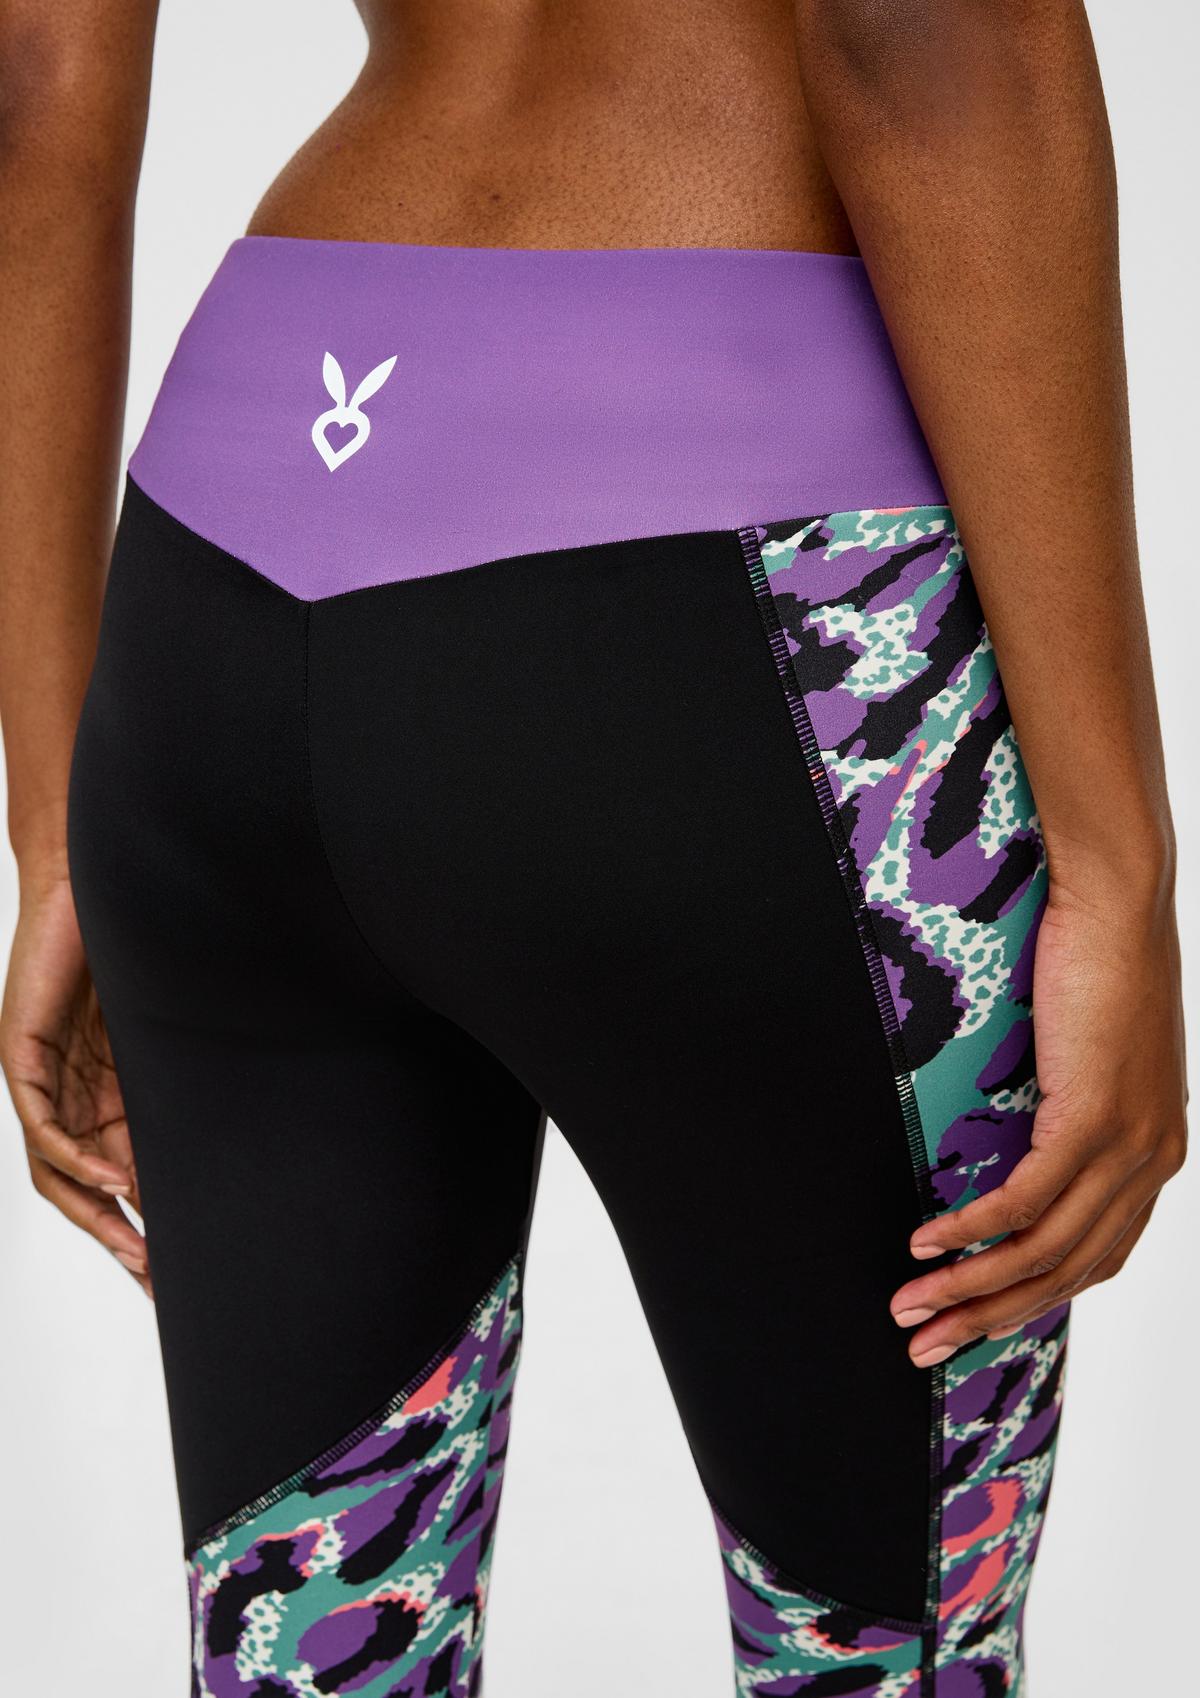 Limea Women's Valentine's Day Lovesy Stripes Print Leggings Skinny Pants  For Yoga Running Pilates Gym